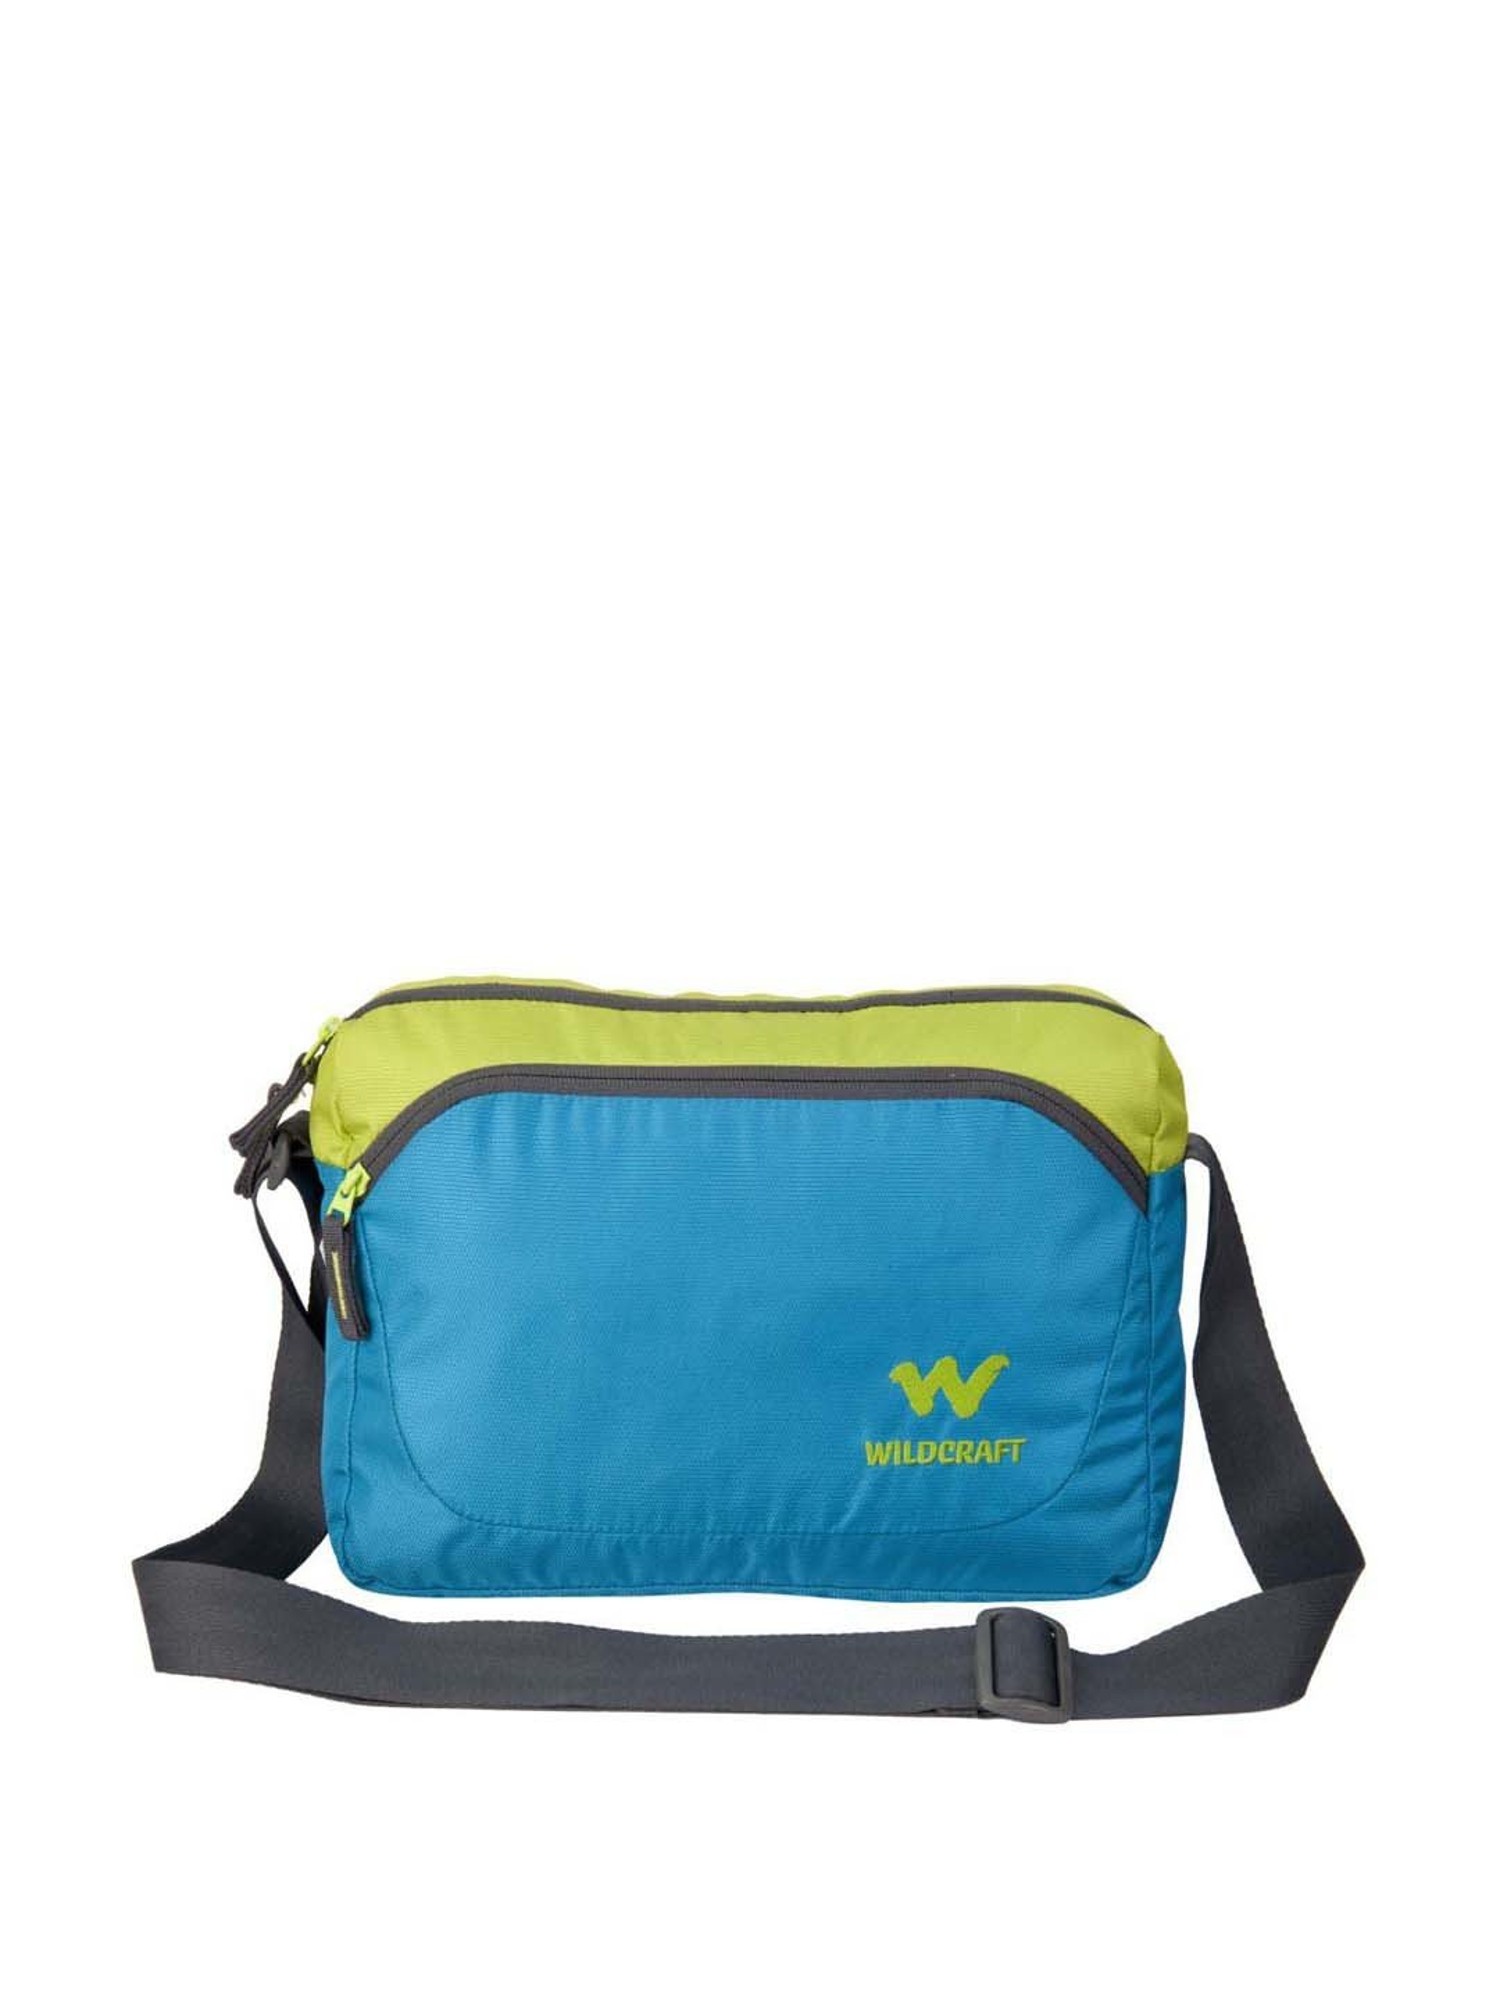 Buy Wildcraft Men Multicolor Messenger Bag Zero Red Online @ Best Price in  India | Flipkart.com